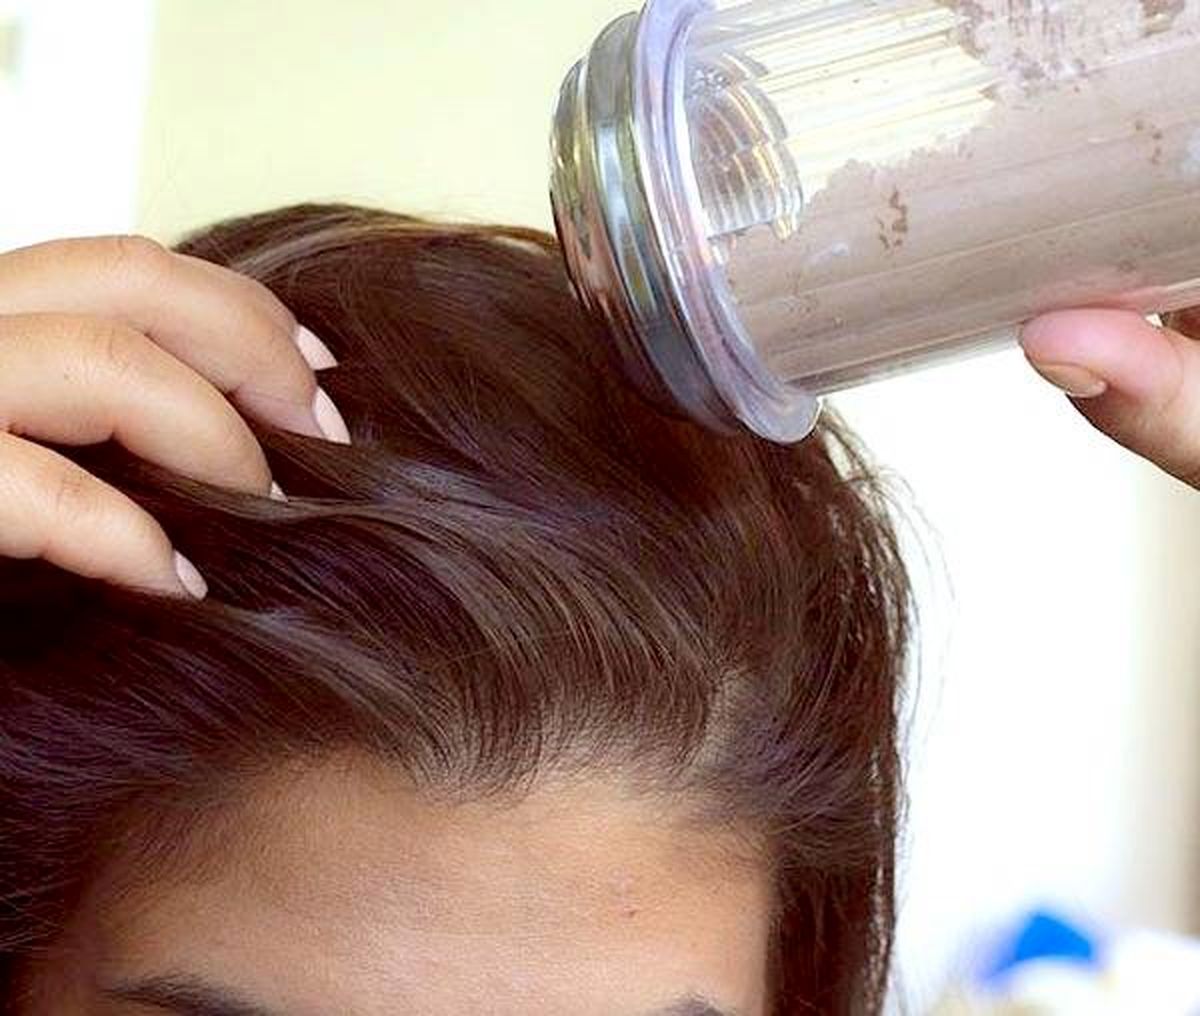 ترفند کاربردی برای خانم هایی که موهاشون چربه |  خلاص شدن از دست موهای چرب تو چند ثانیه | آموزش ساخت شامپو خشک در منزل با مواد خونگی